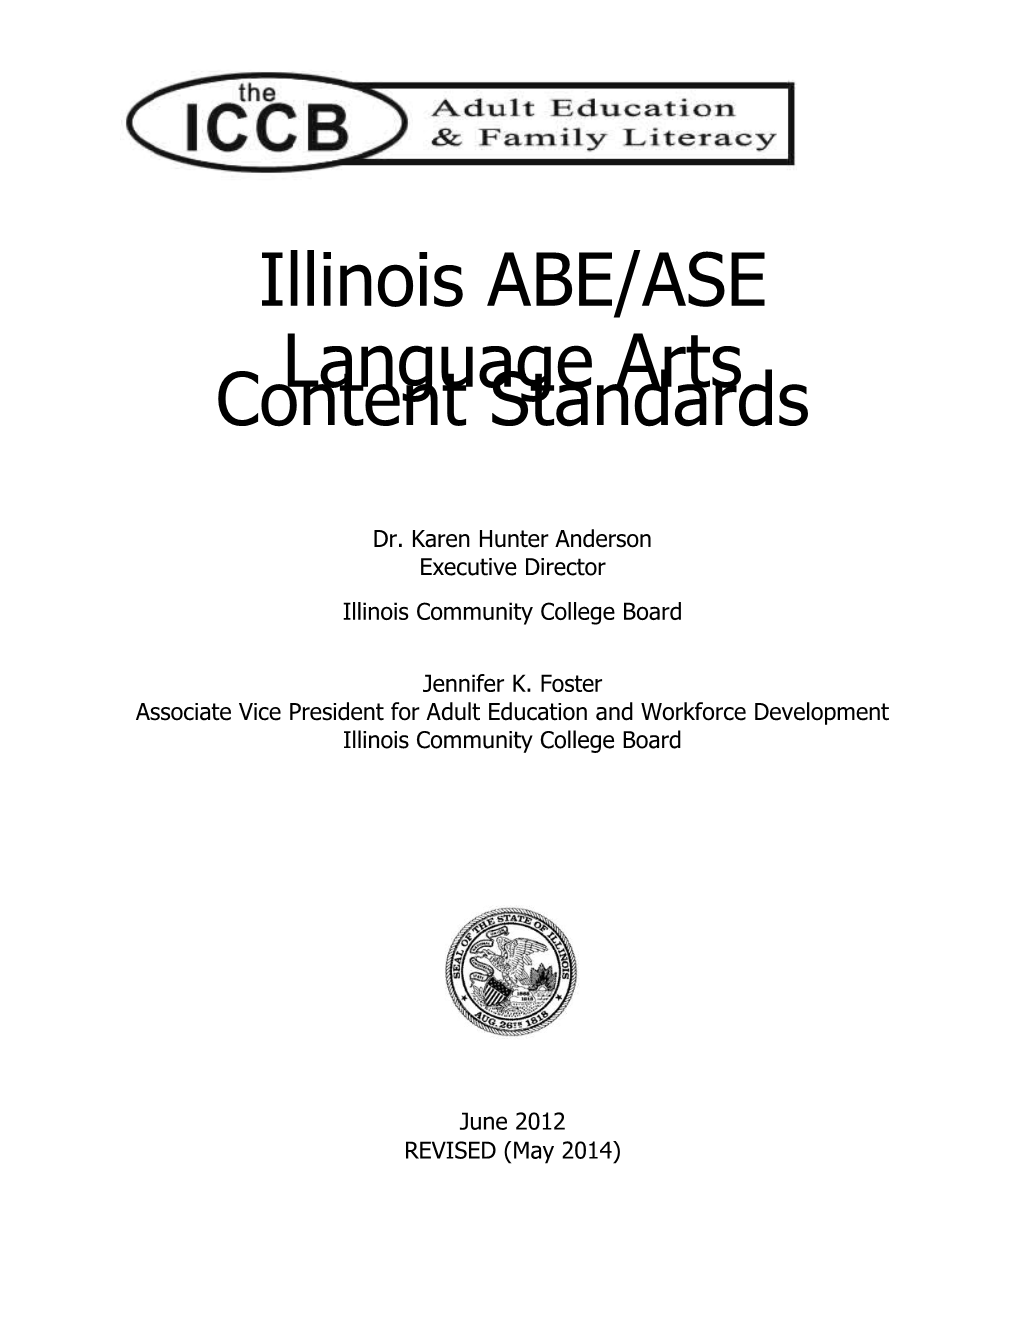 Illinoisabe/ASE Language Arts